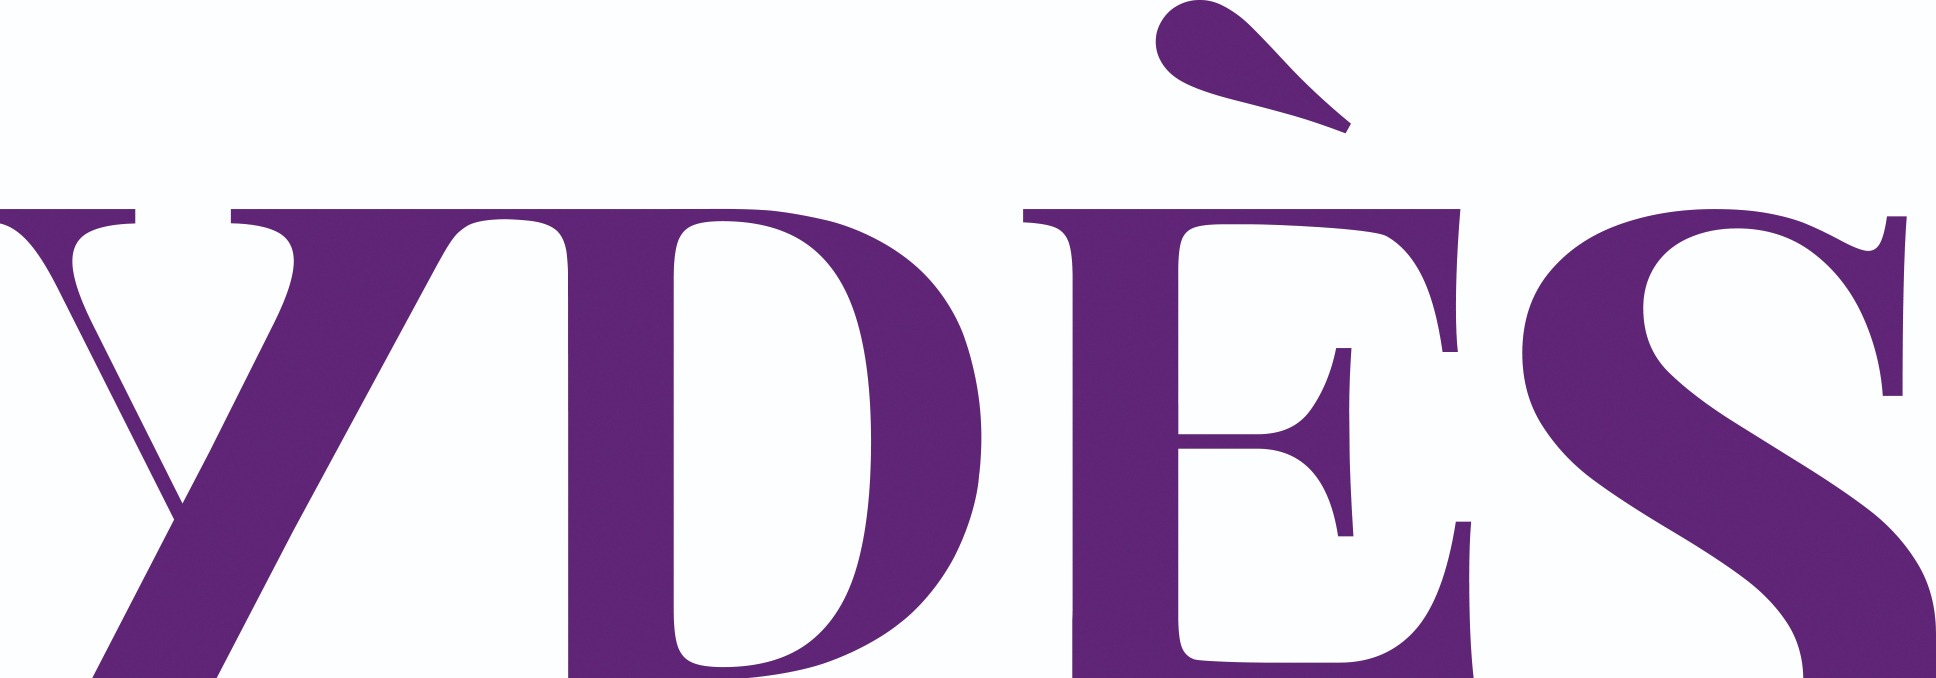 the Ydès Avocats logo.